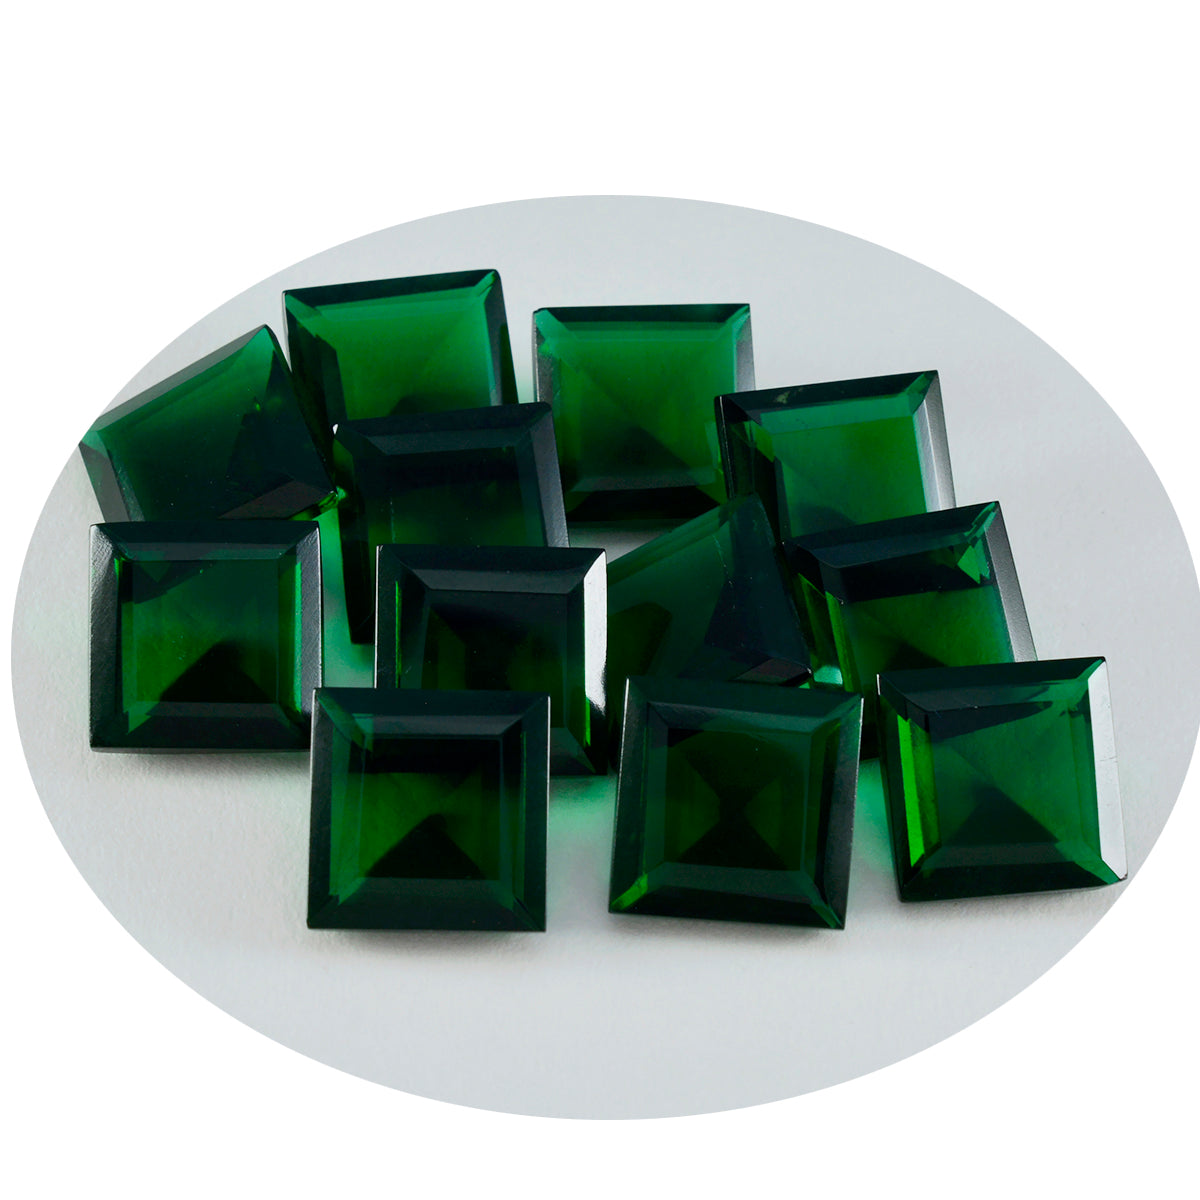 Riyogems 1 Stück grüner Smaragd, CZ, facettiert, 12 x 12 mm, quadratische Form, tolle Qualität, lose Edelsteine